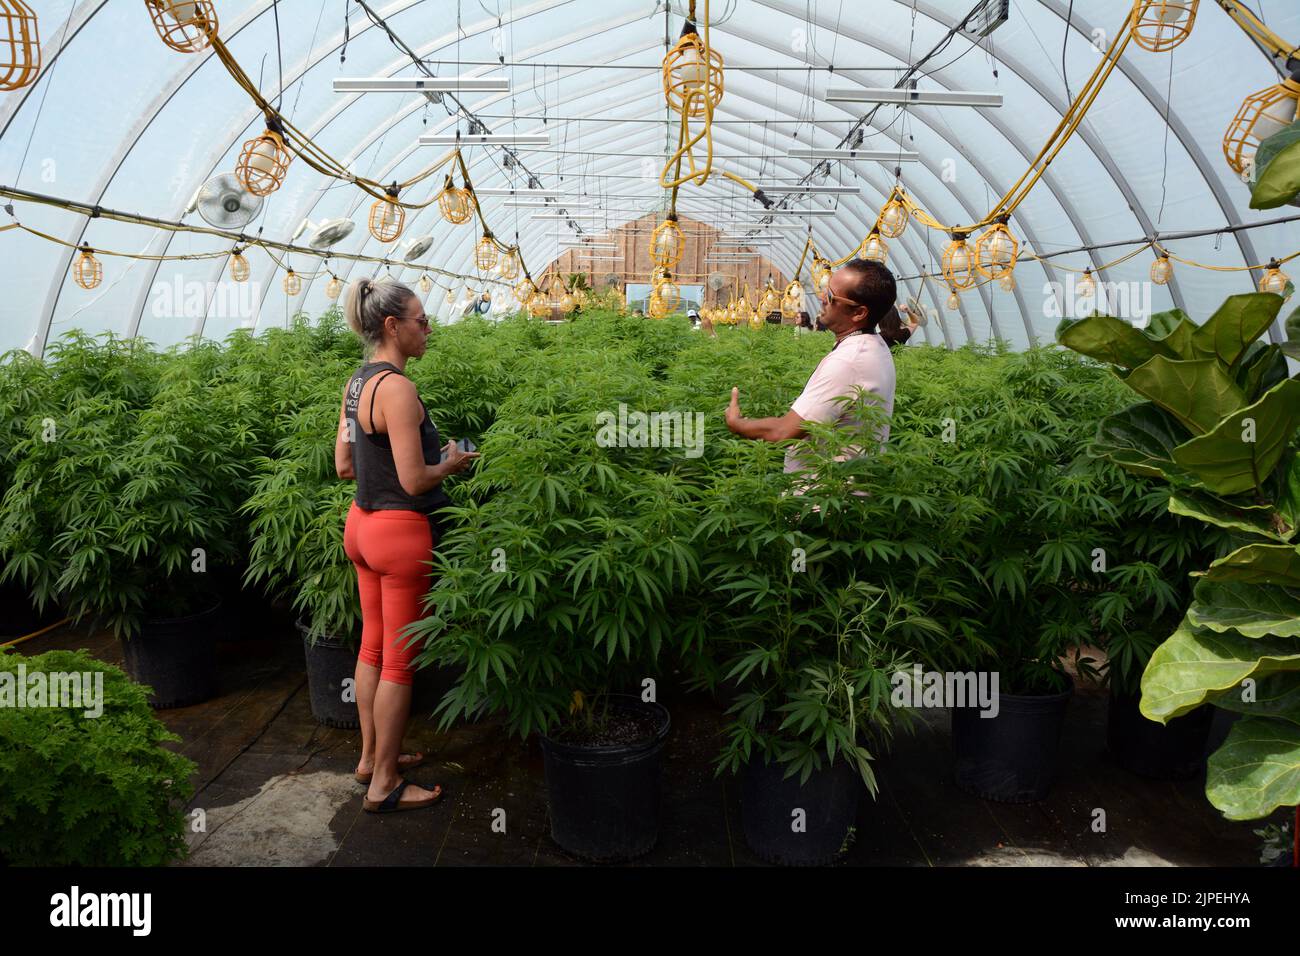 Dos personas hablando en un invernadero cultivando plantas recreativas legales de marihuana o cannabis en una granja sostenible cerca de Creemore, Ontario, Canadá. Foto de stock